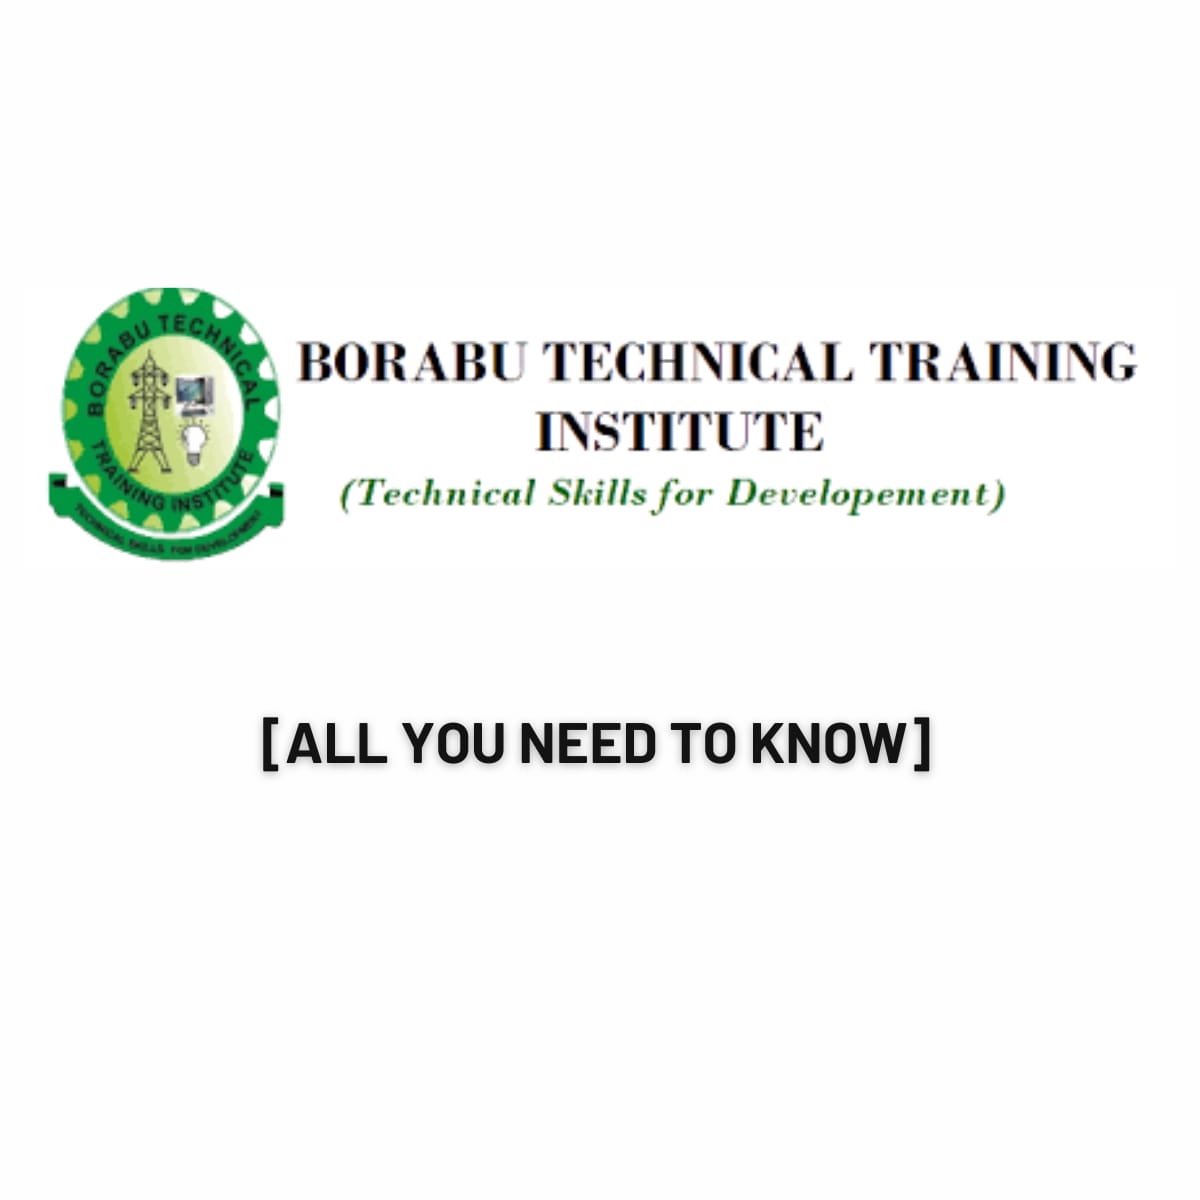 Borabu Technical Training Institute